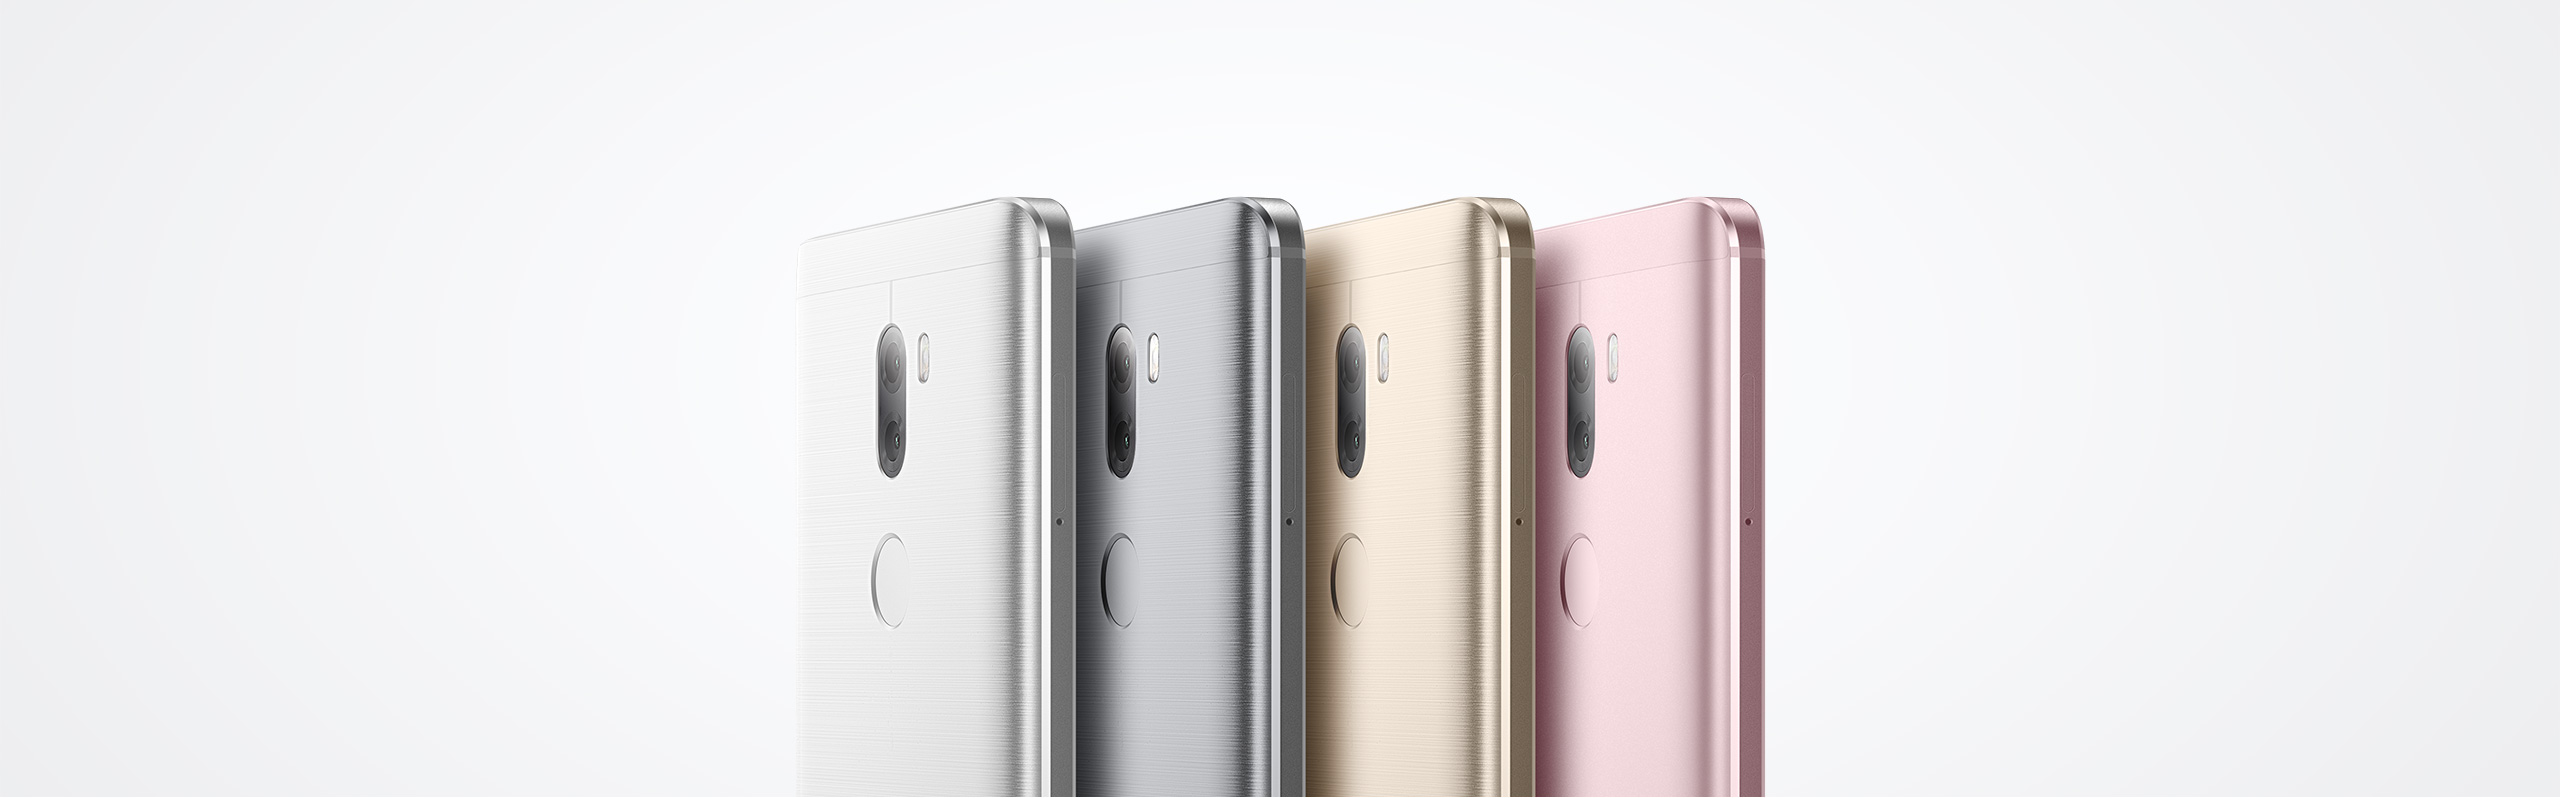 Xiaomi Mi5S Plus цветовые решения: белый, серый, розовый и золотой